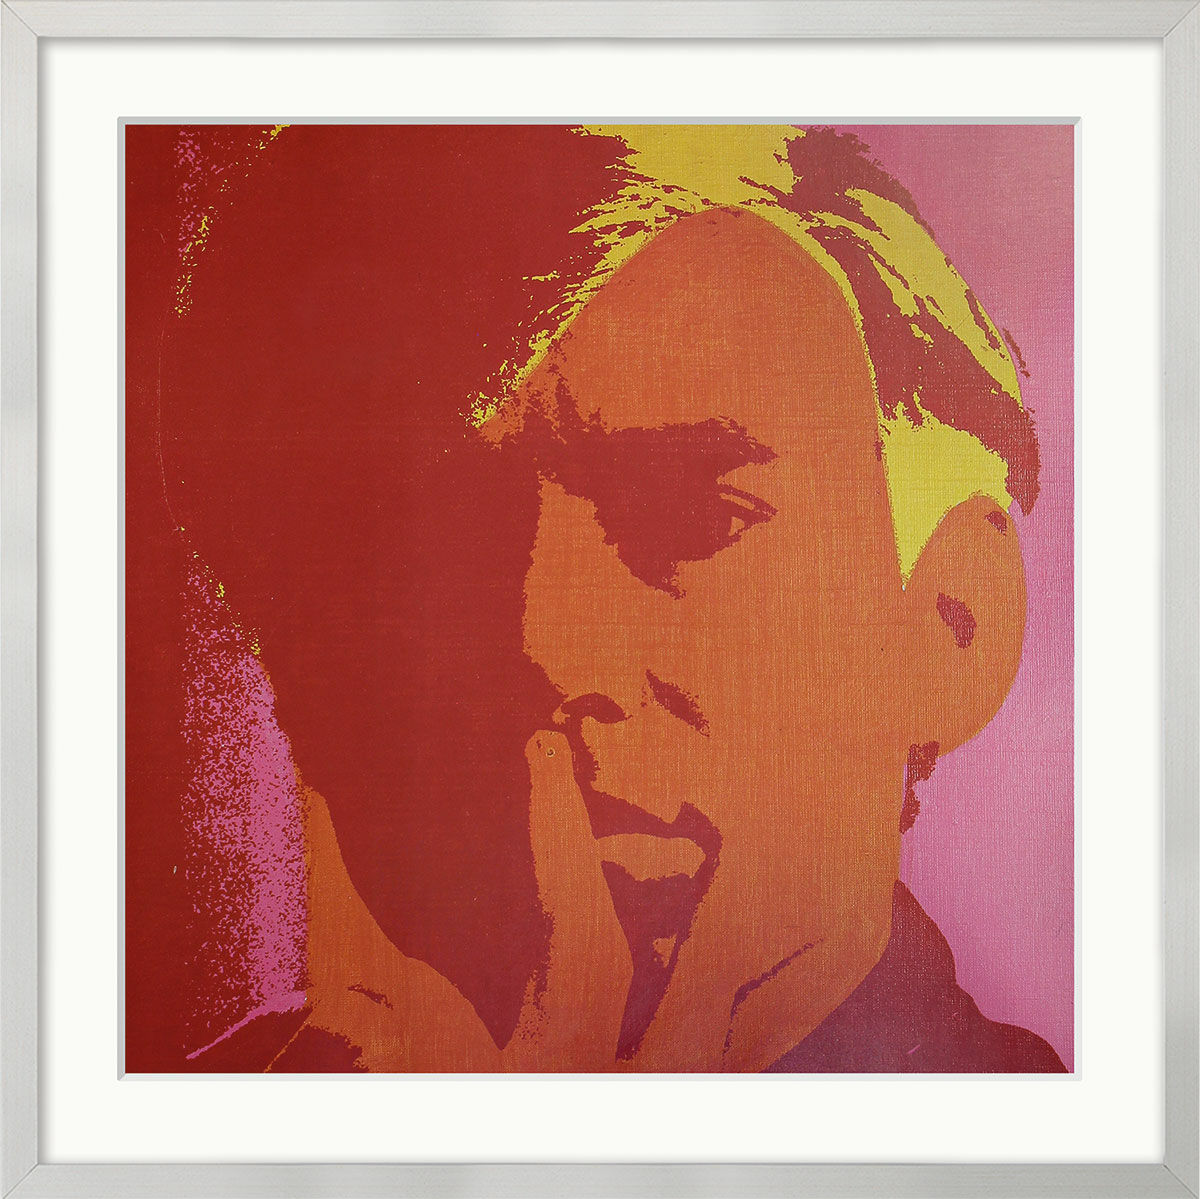 Tableau "Autoportrait" (1993), encadré von Andy Warhol